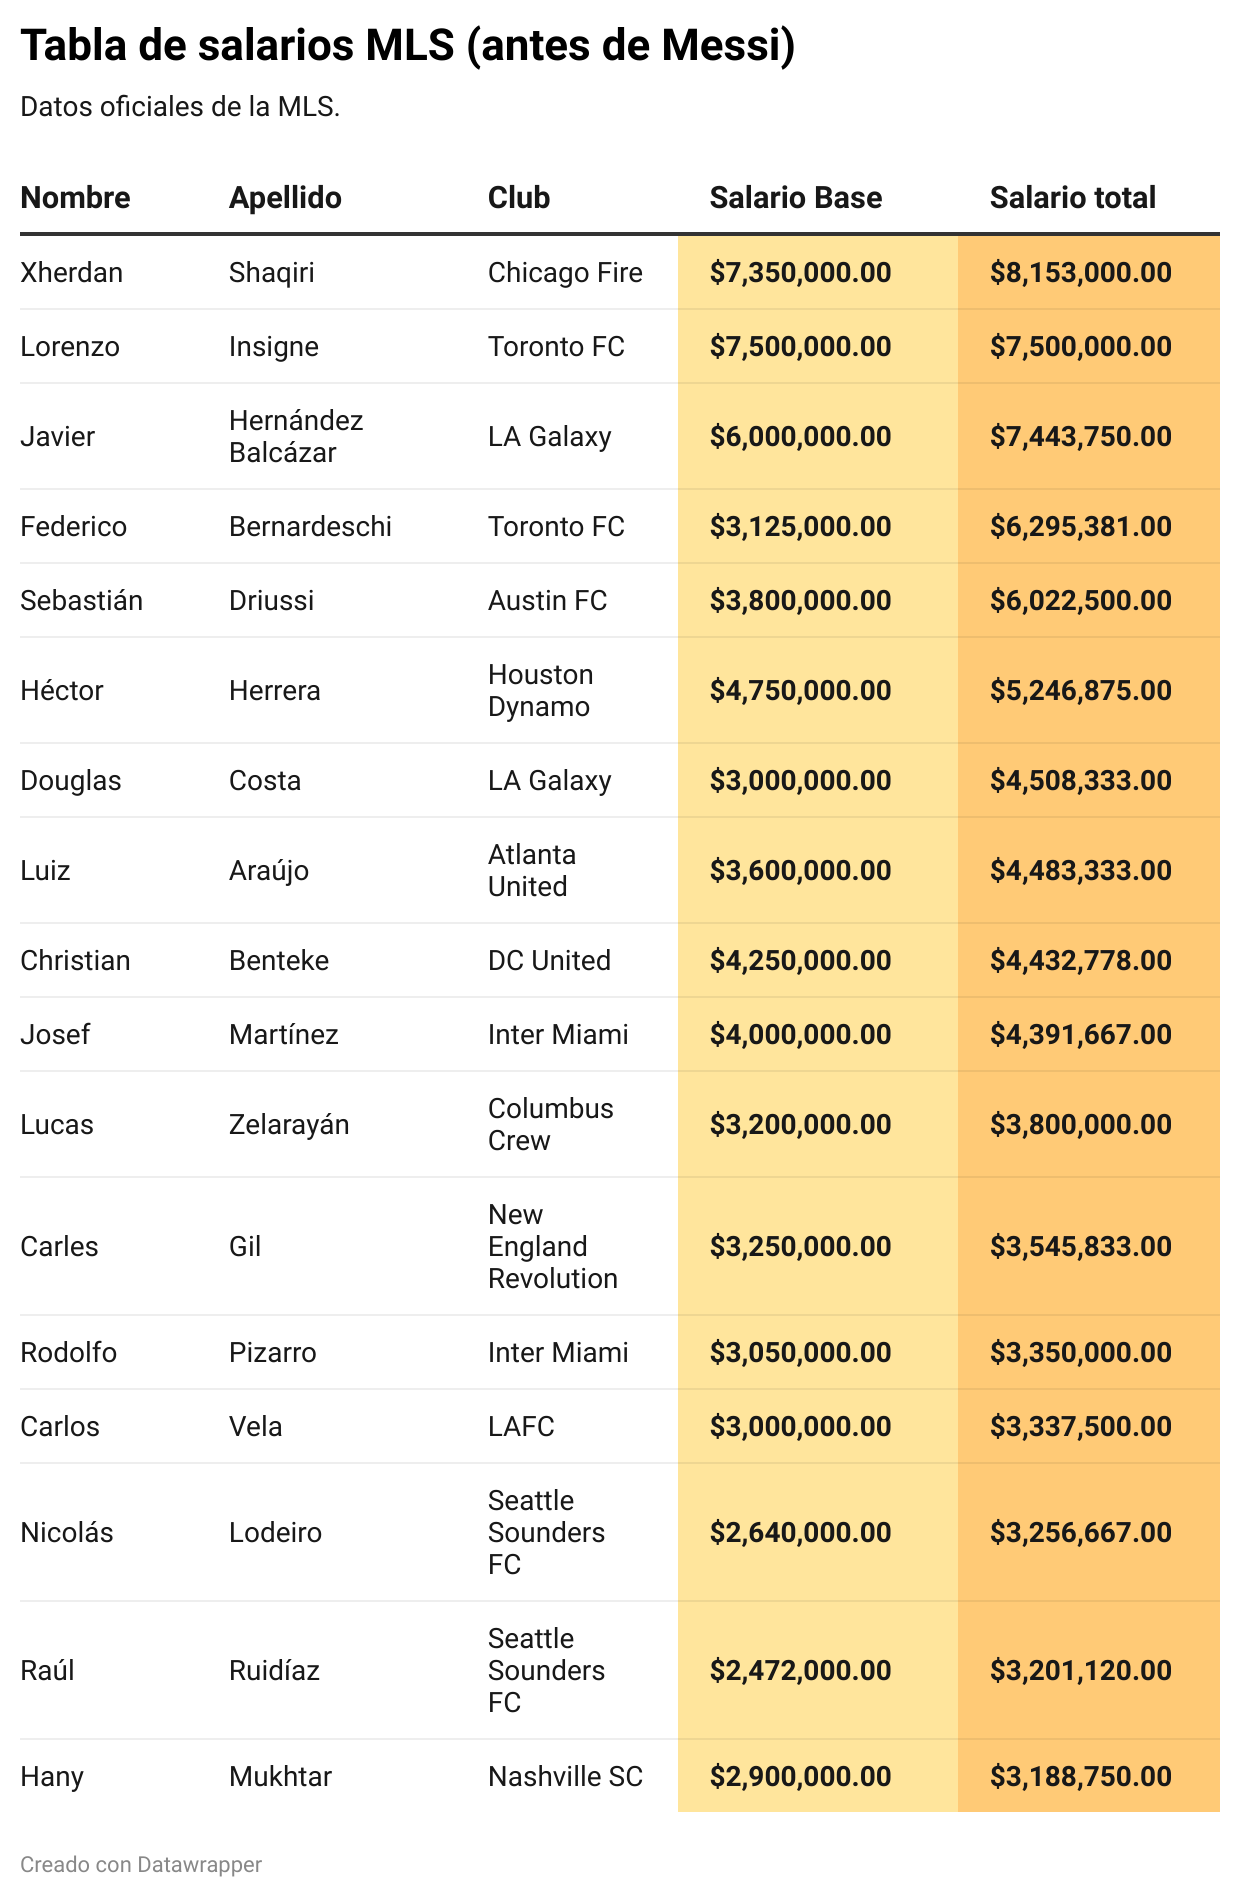 Tabla de salarios de la MLS.